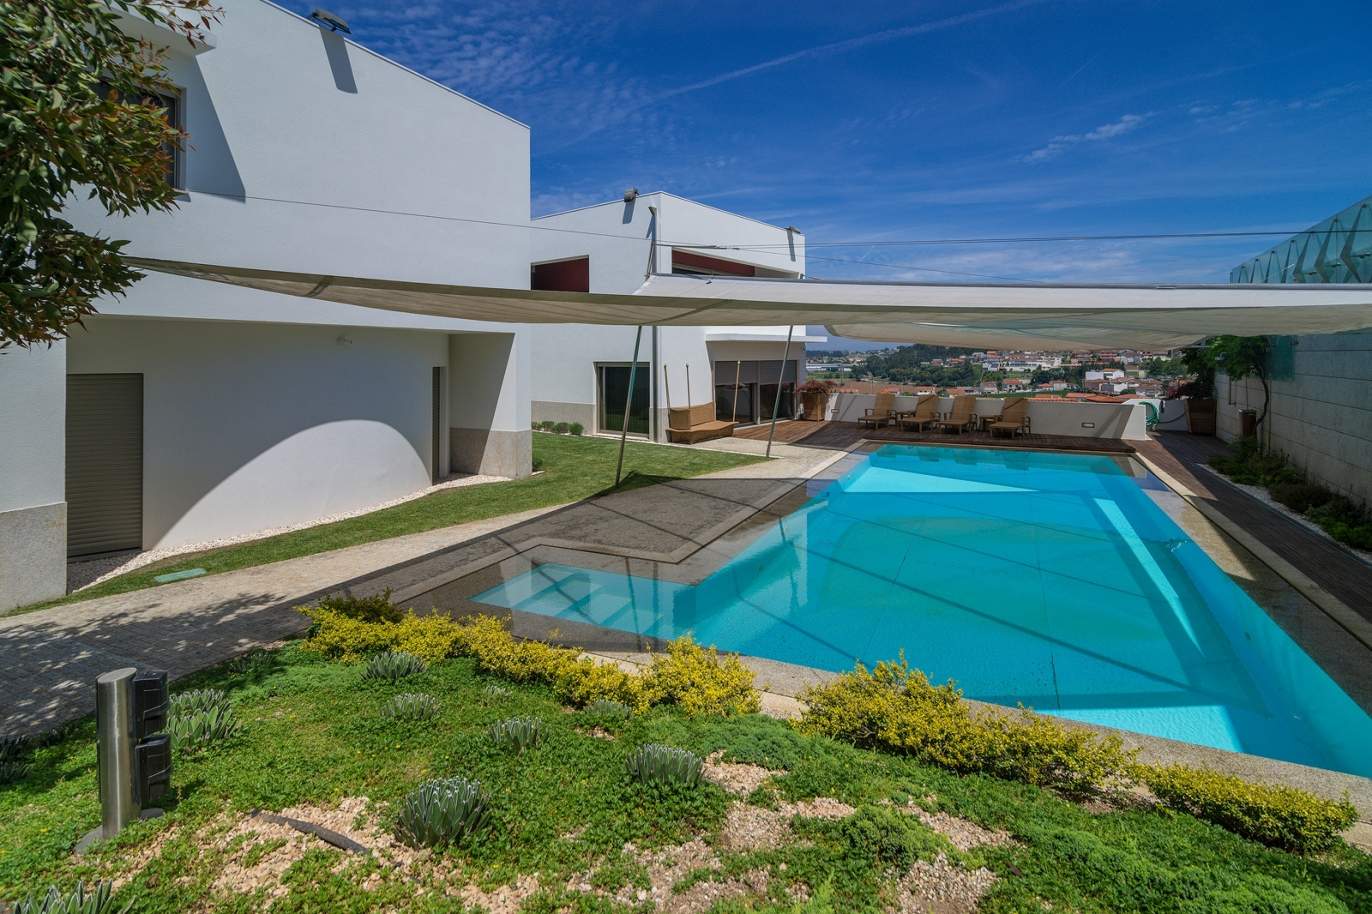 Moradia V3, com piscina e jardim, para venda, na Trofa, Porto _154947